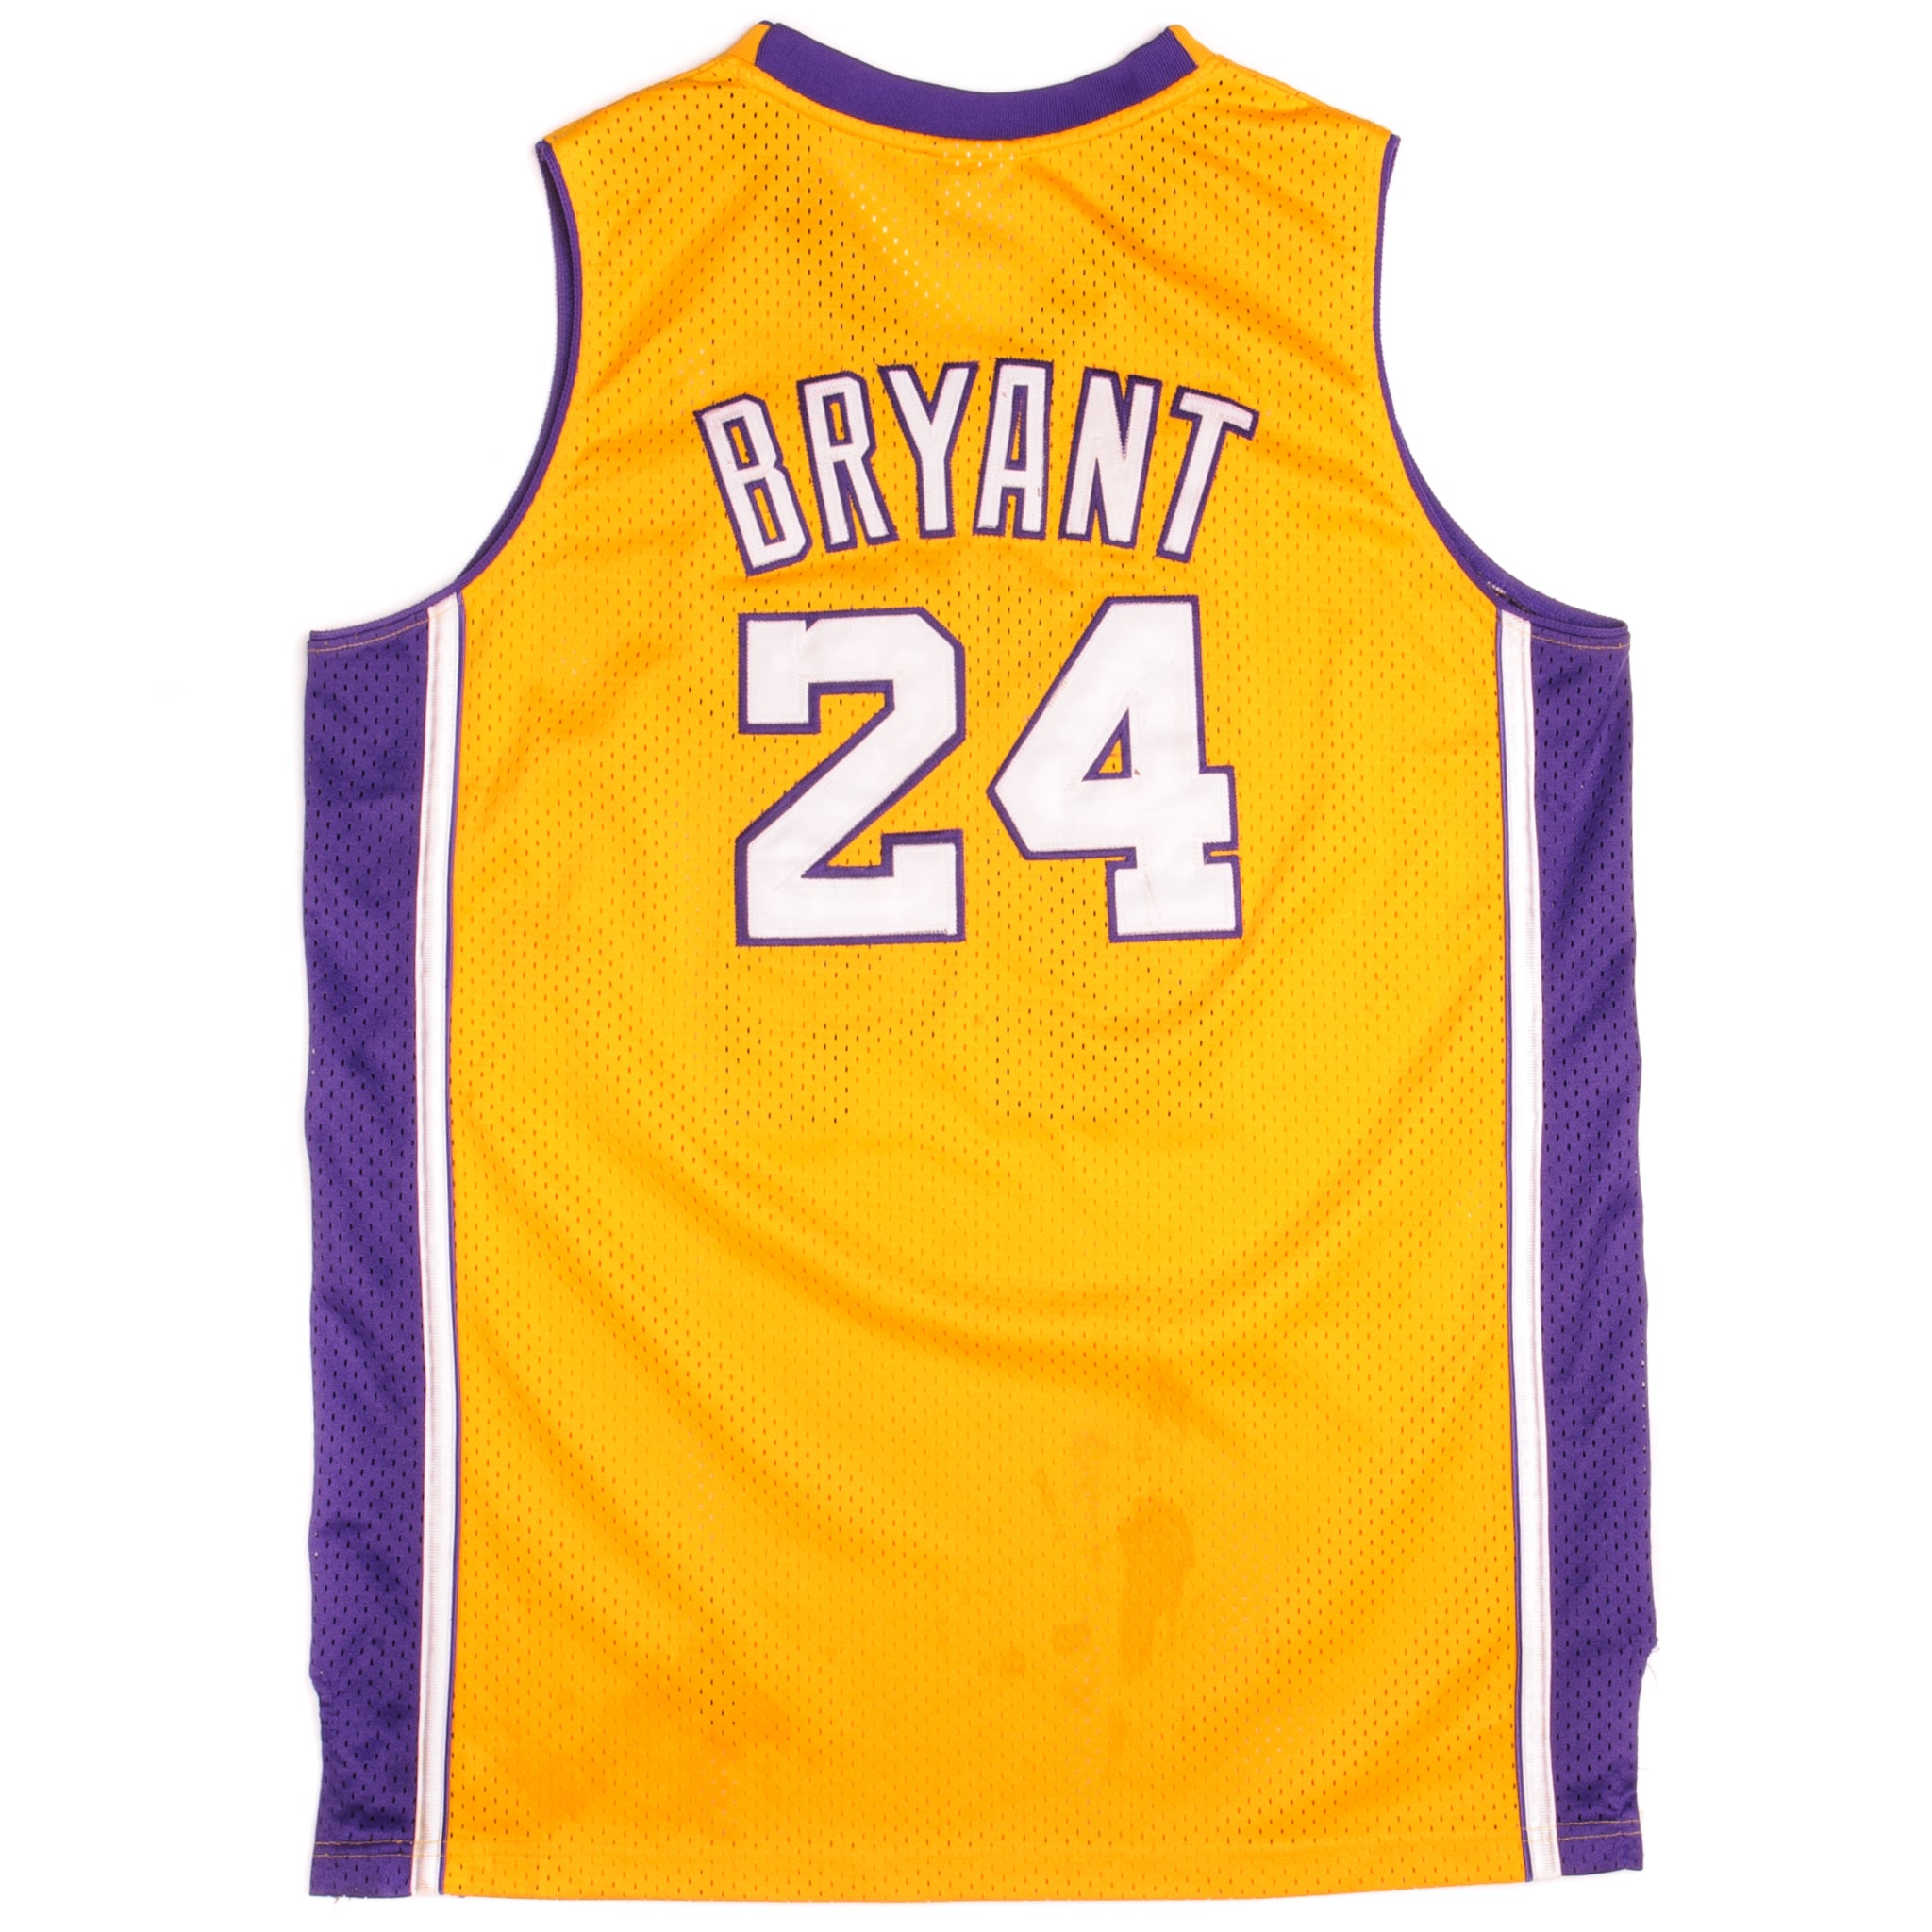 Vintage Kobe Bryant Basketball Jersey  Bryant basketball, Basketball jersey,  Kobe bryant